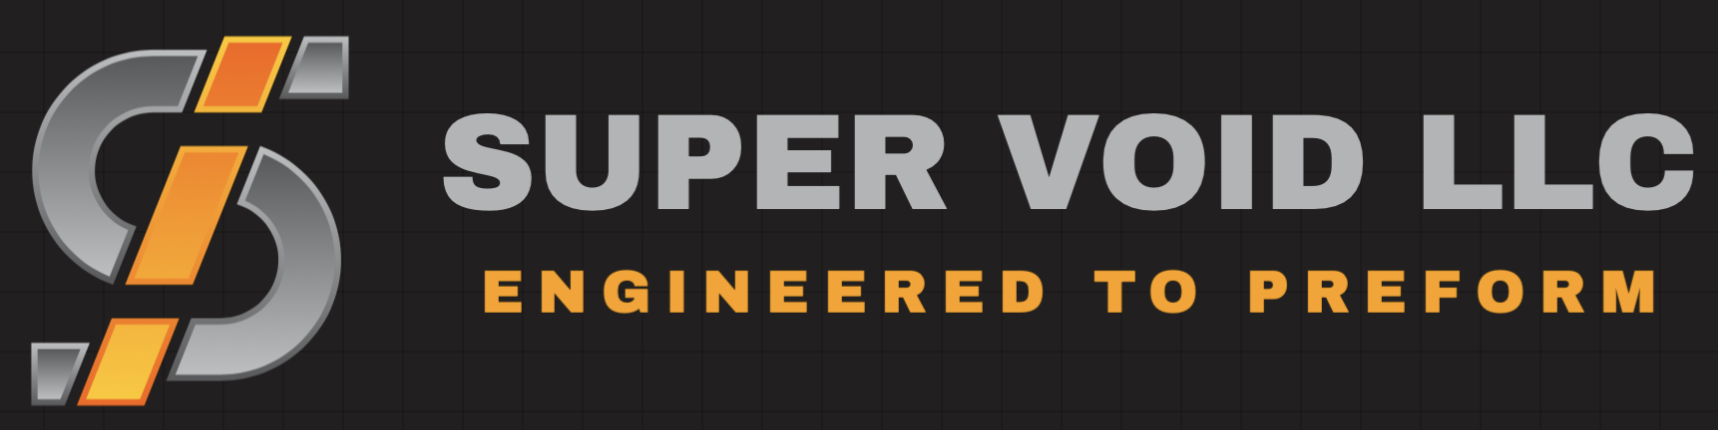 Supervoid_logo